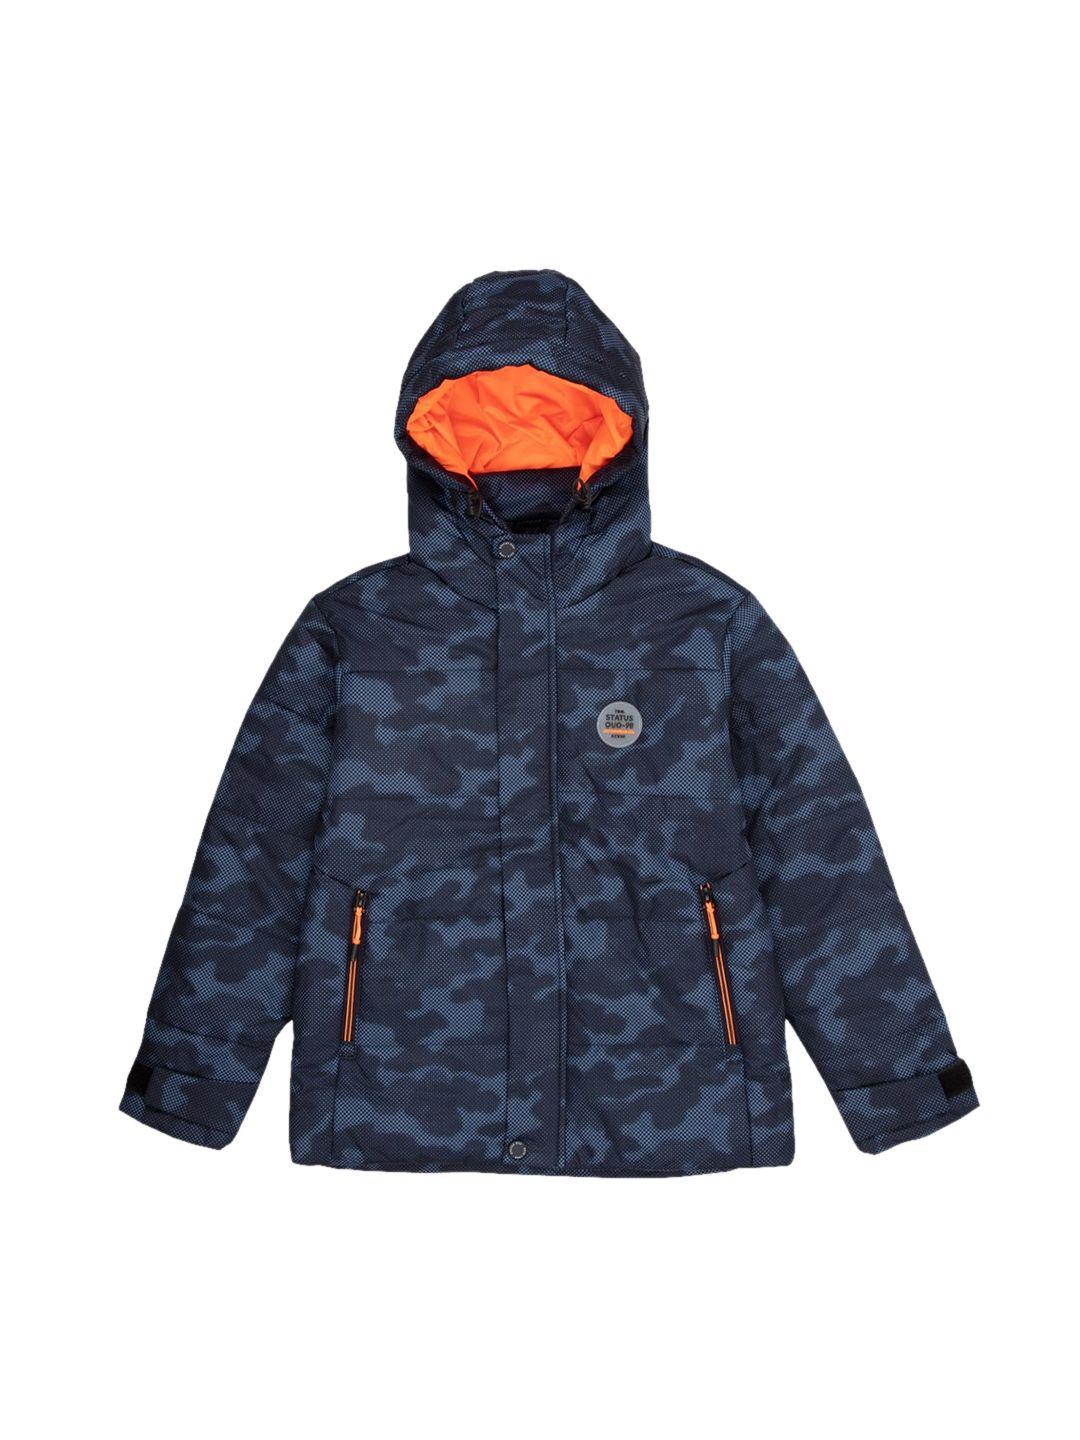 status quo boys navy blue orange camouflage padded jacket